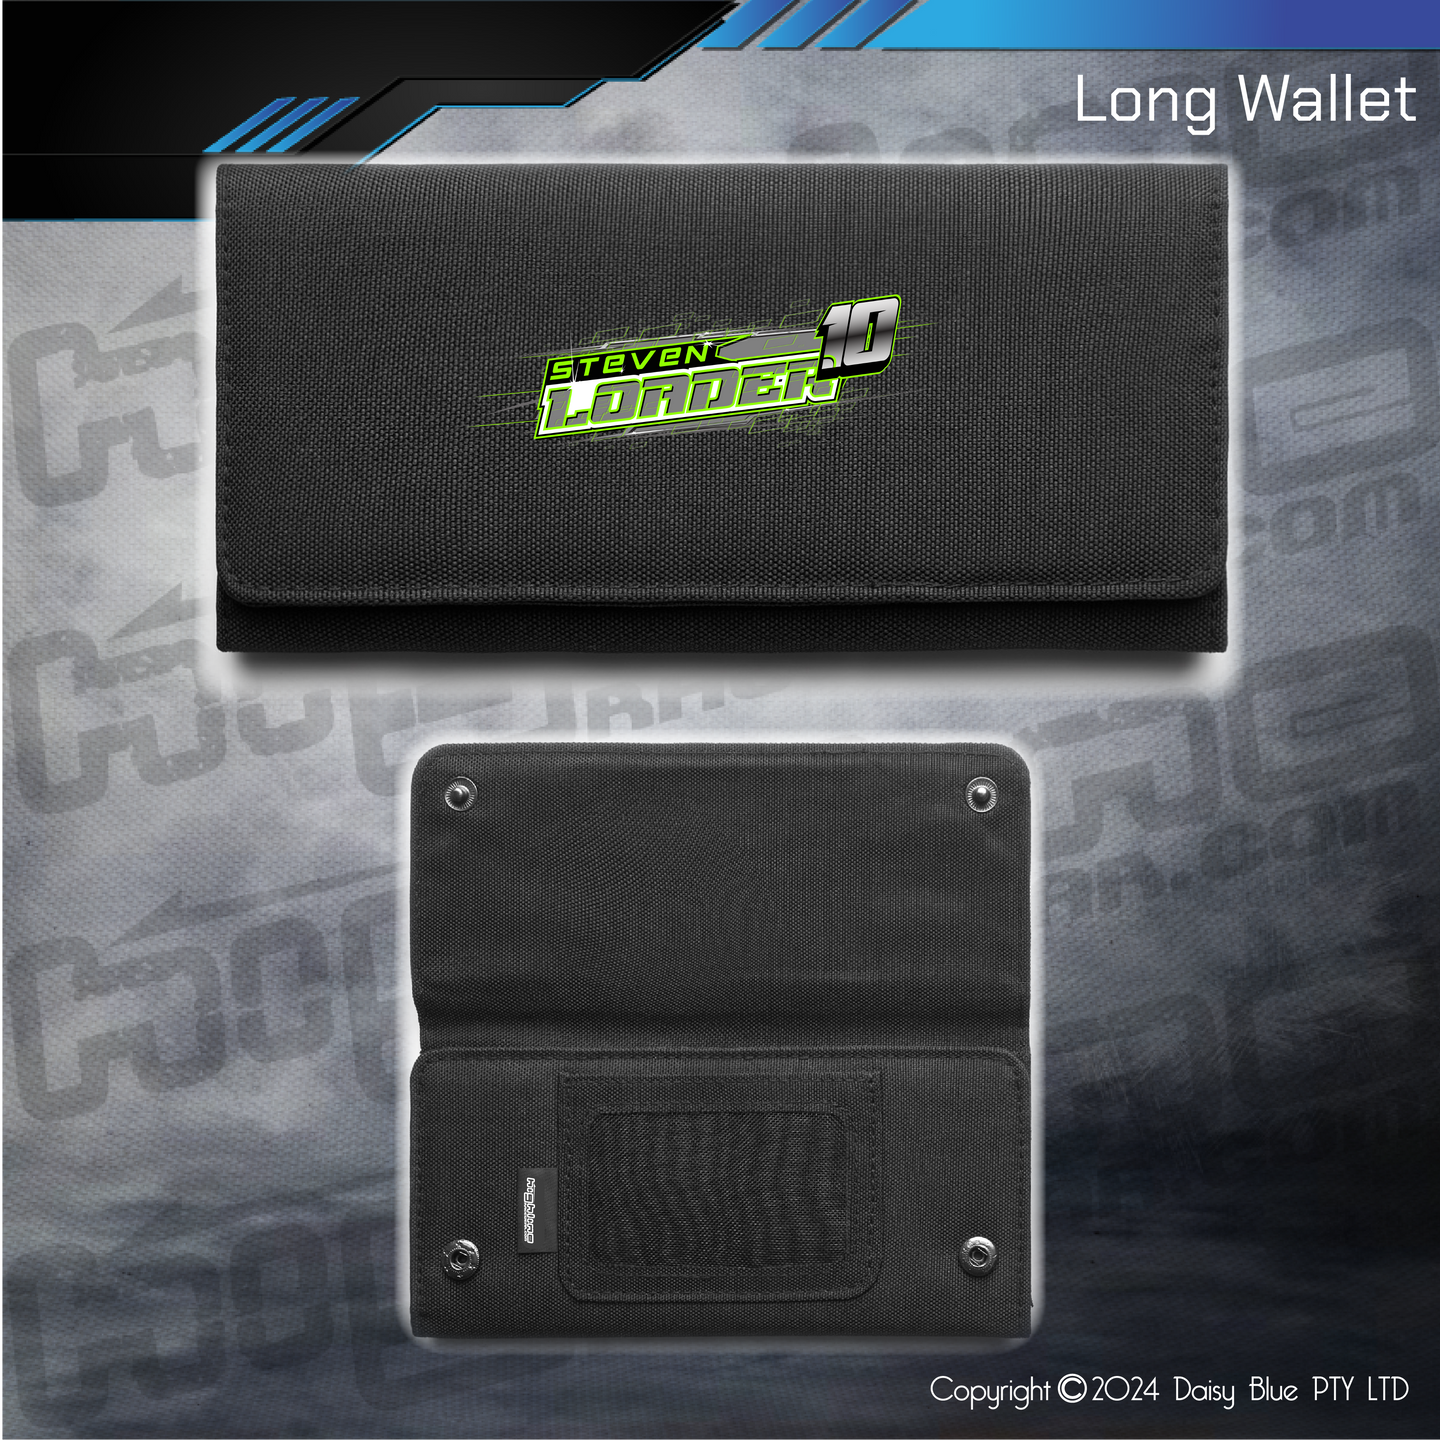 Long Wallet - Steve Loader Sprint Car